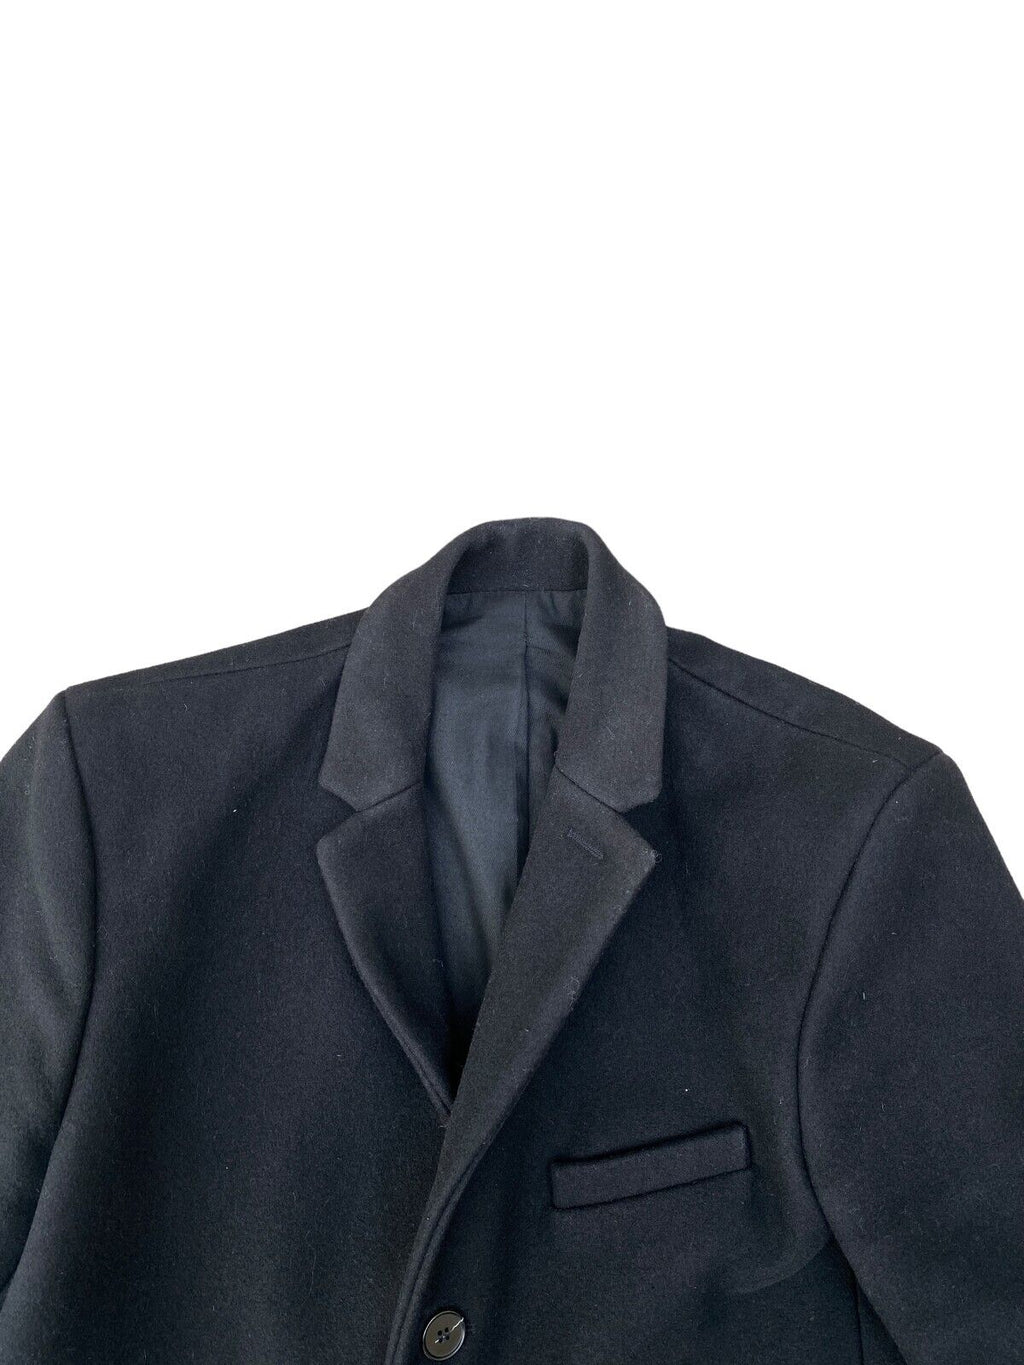 Heavy Melton Wool - Black Coat